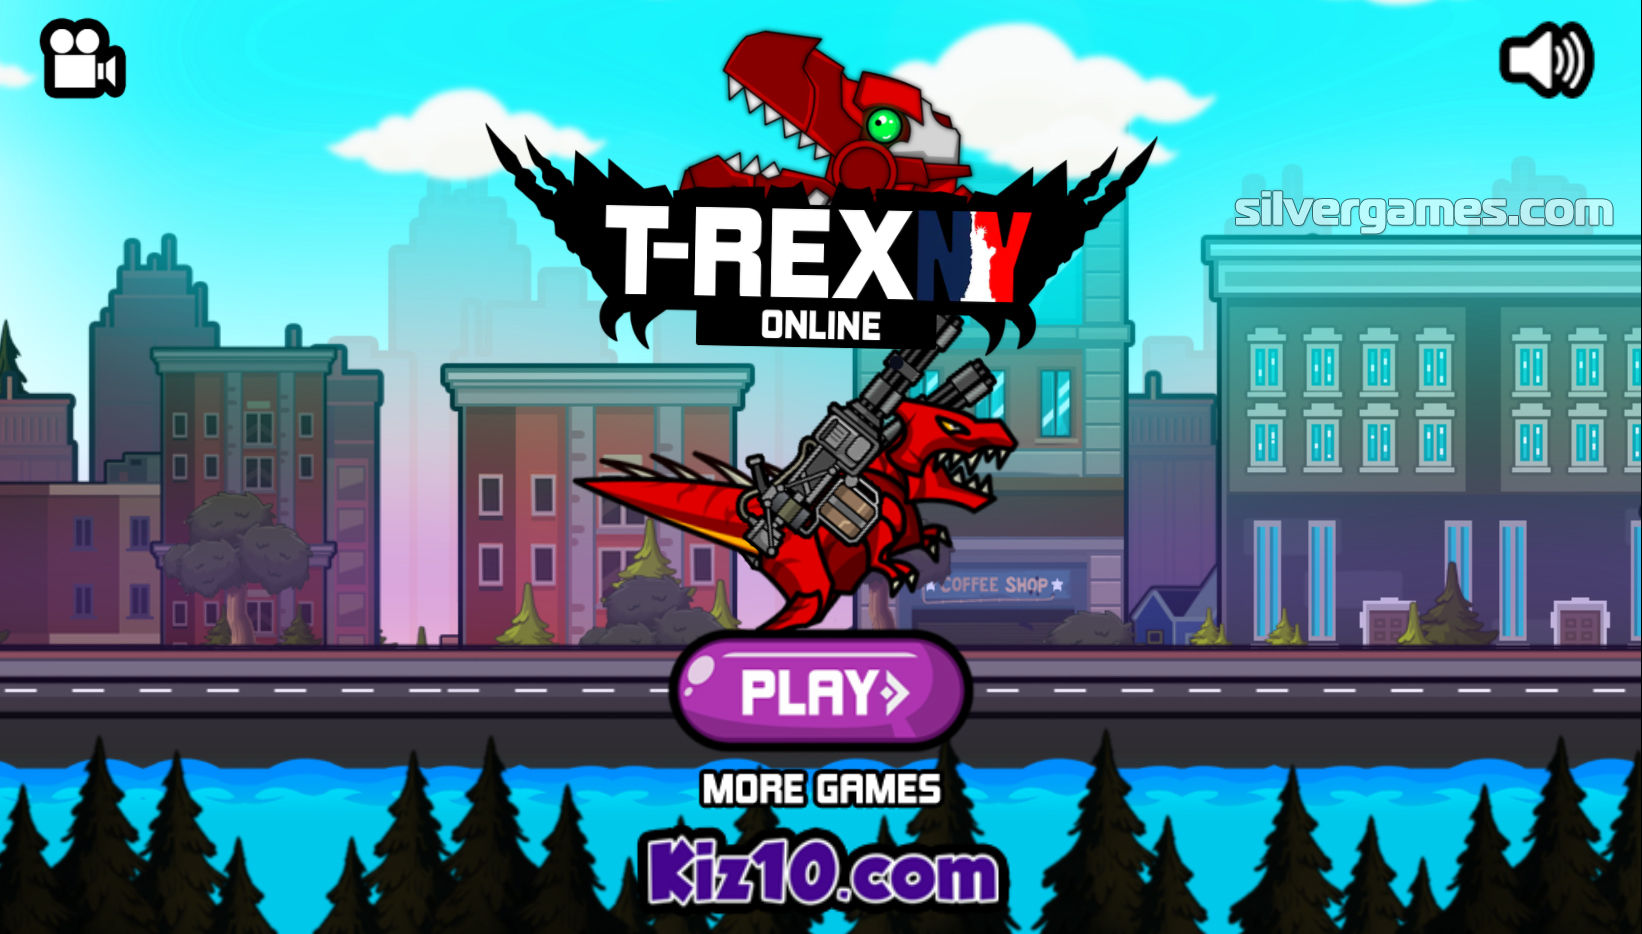 T-REX N.Y Online play at